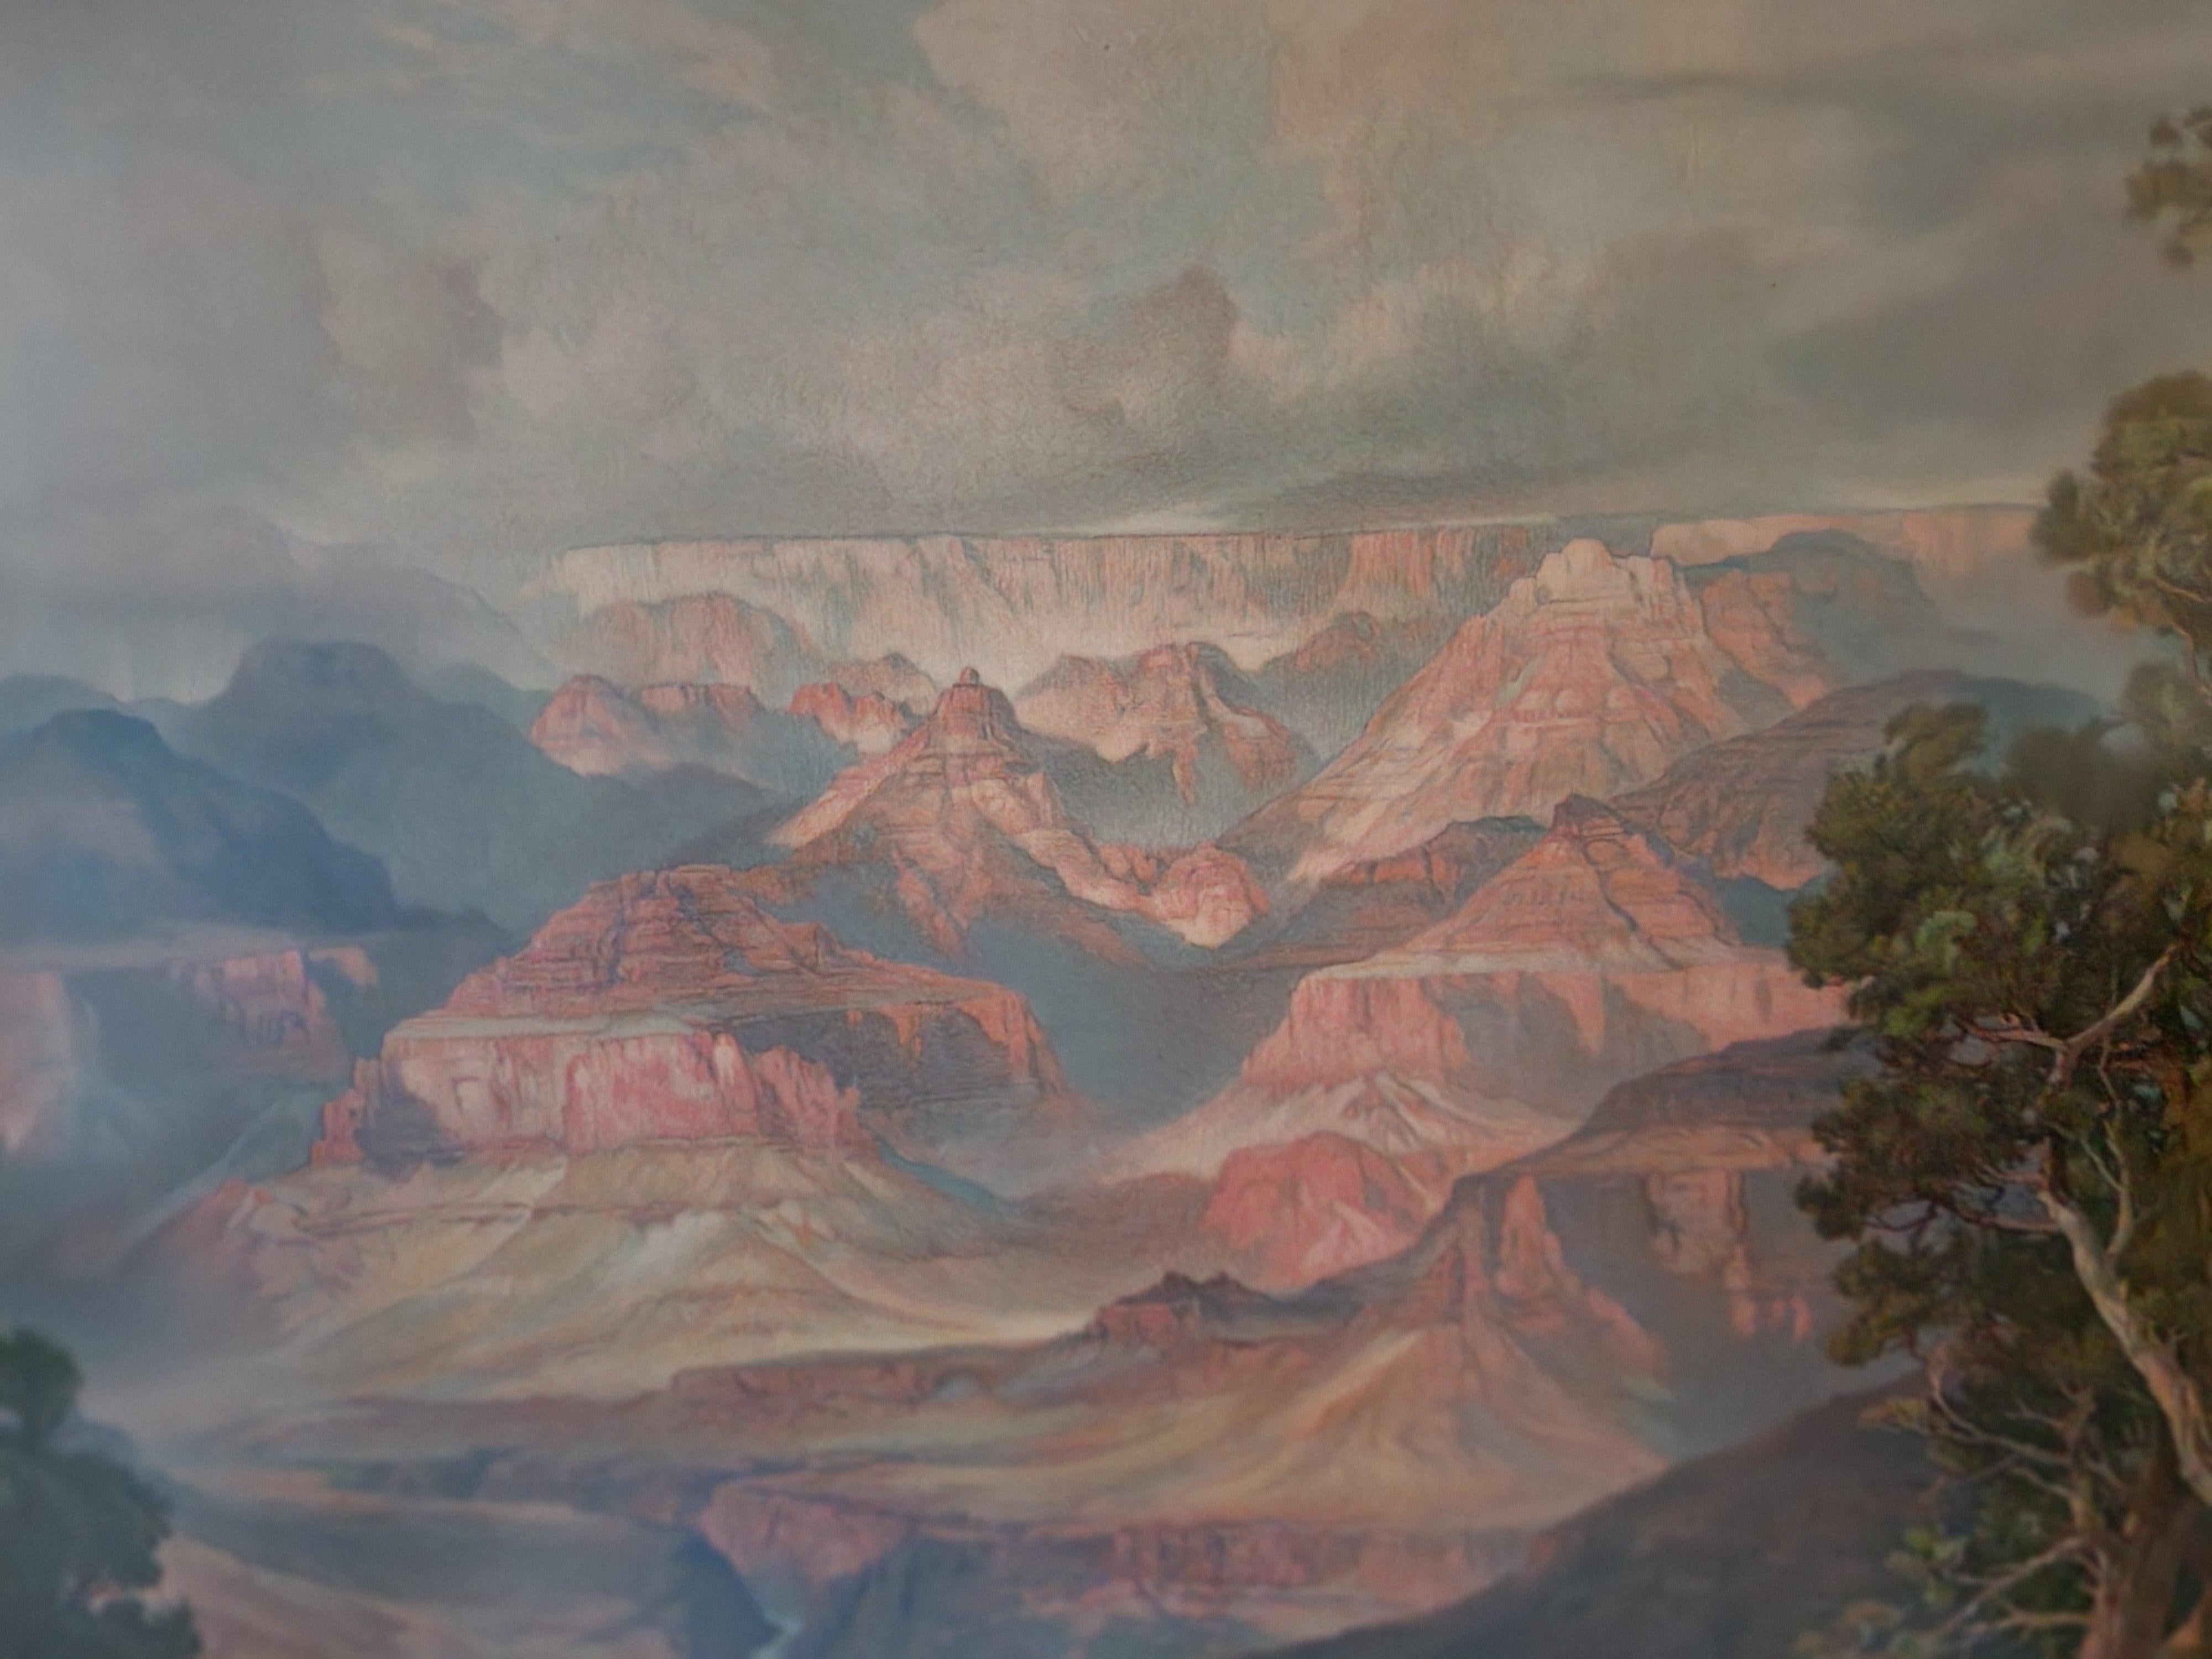 Grand Canyon von Arizona aus der Hermit Rim Road (Amerikanischer Realismus), Print, von (after) Thomas Moran